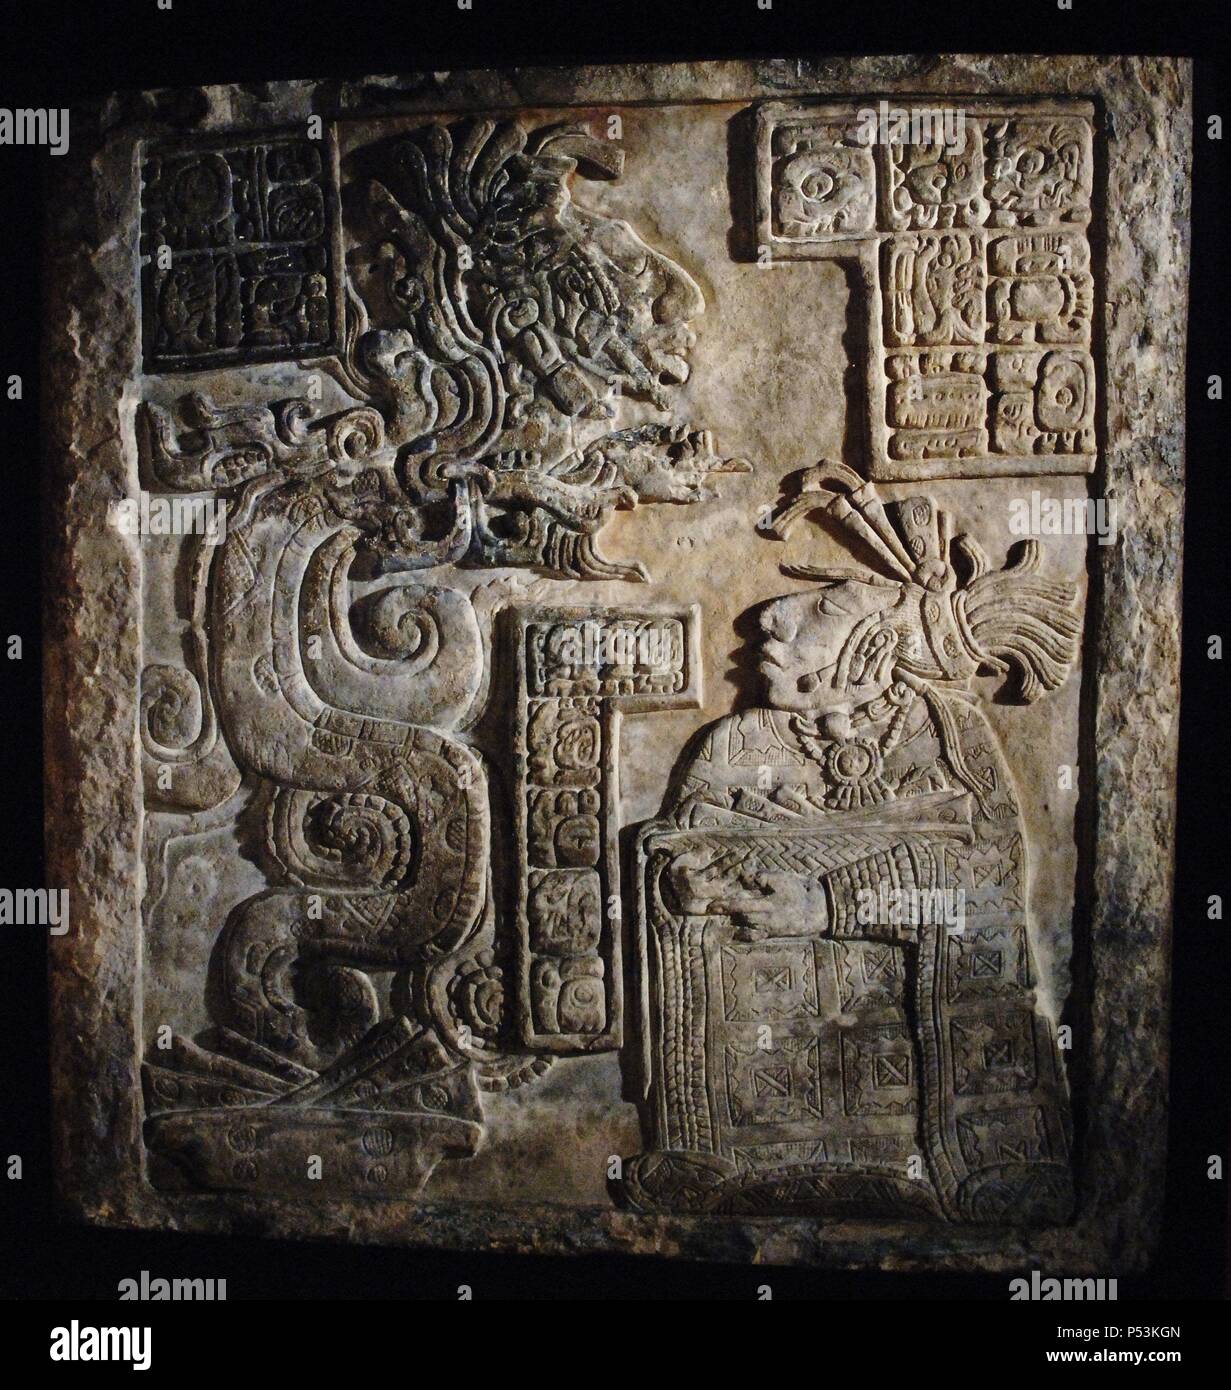 ARTE MAYA. PERIODO CLASICO TARDIO (600-900 d. C.). DINTEL 15 DE YAXCHILAN (770-775 d. C.). Scaricare en piedra caliza que rappresentanouna a la ESPOSA DEL REY PAJARO JAGUAR IV (752-768), TUUN WAK, HACIENDO AUTOSACRIFICIO ONU DE SANGRE ANTE LA VISIONE SERPIENTE QUE SURGE DE ONU ROLLO DE PAPEL MANCHADO CON LA SANGRE DE LA DAMA. DE SU BOCA VENDITA ANCESTRO ONU CON EL QUE LA DAMA QUIERE CONTACTAR. La pieza forma parte de una serie de tres allevia encargados por Pájaro Jaguar IV para decorar LA ESTRUCTURA 21 en Yaxchilán. Estado de Chiapas. México. Museo Británico. Londres. Inglaterra. Reino Unido. Foto Stock